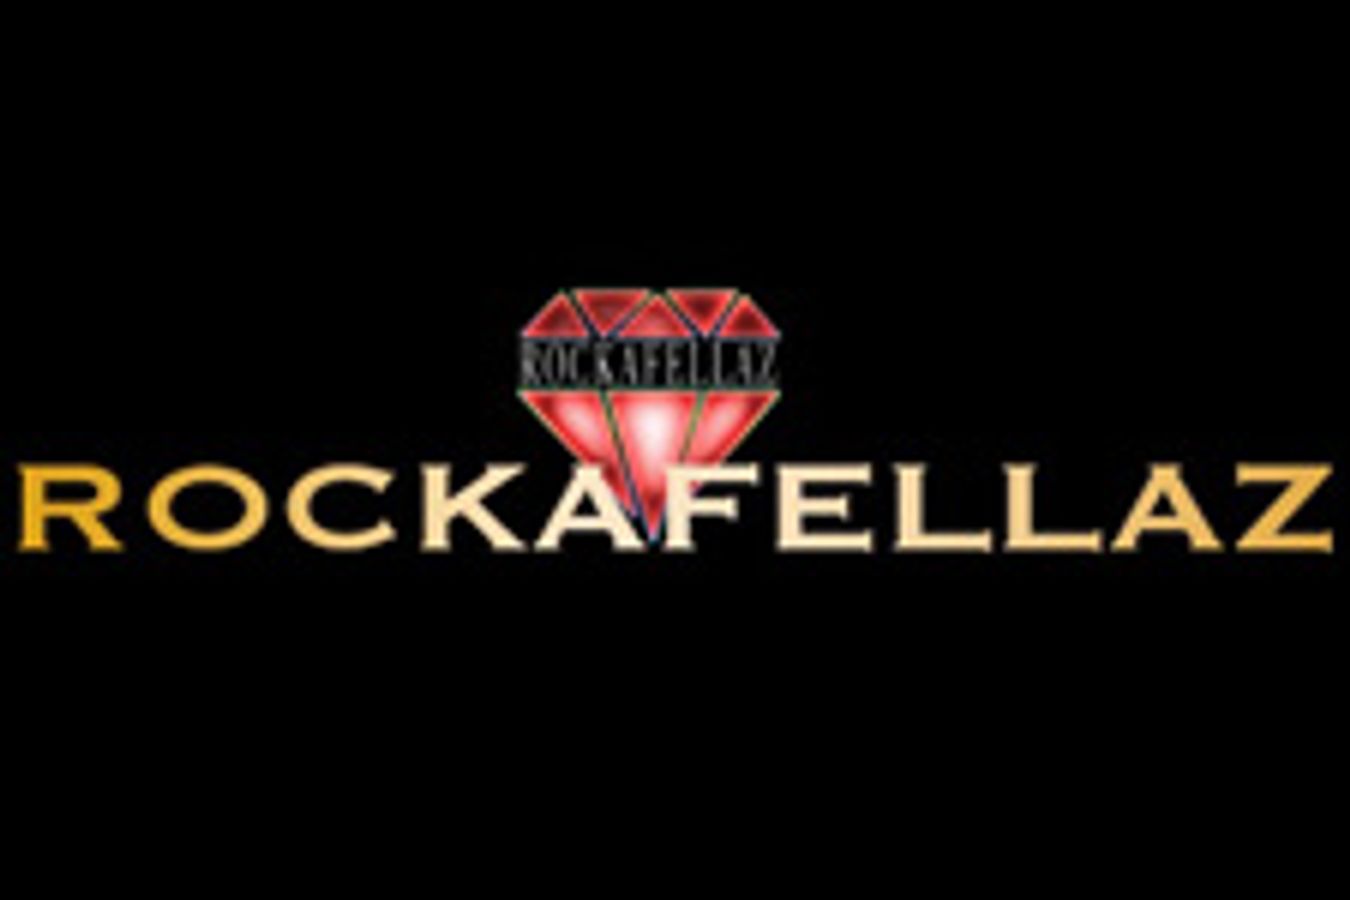 Rockafellaz Entertainment